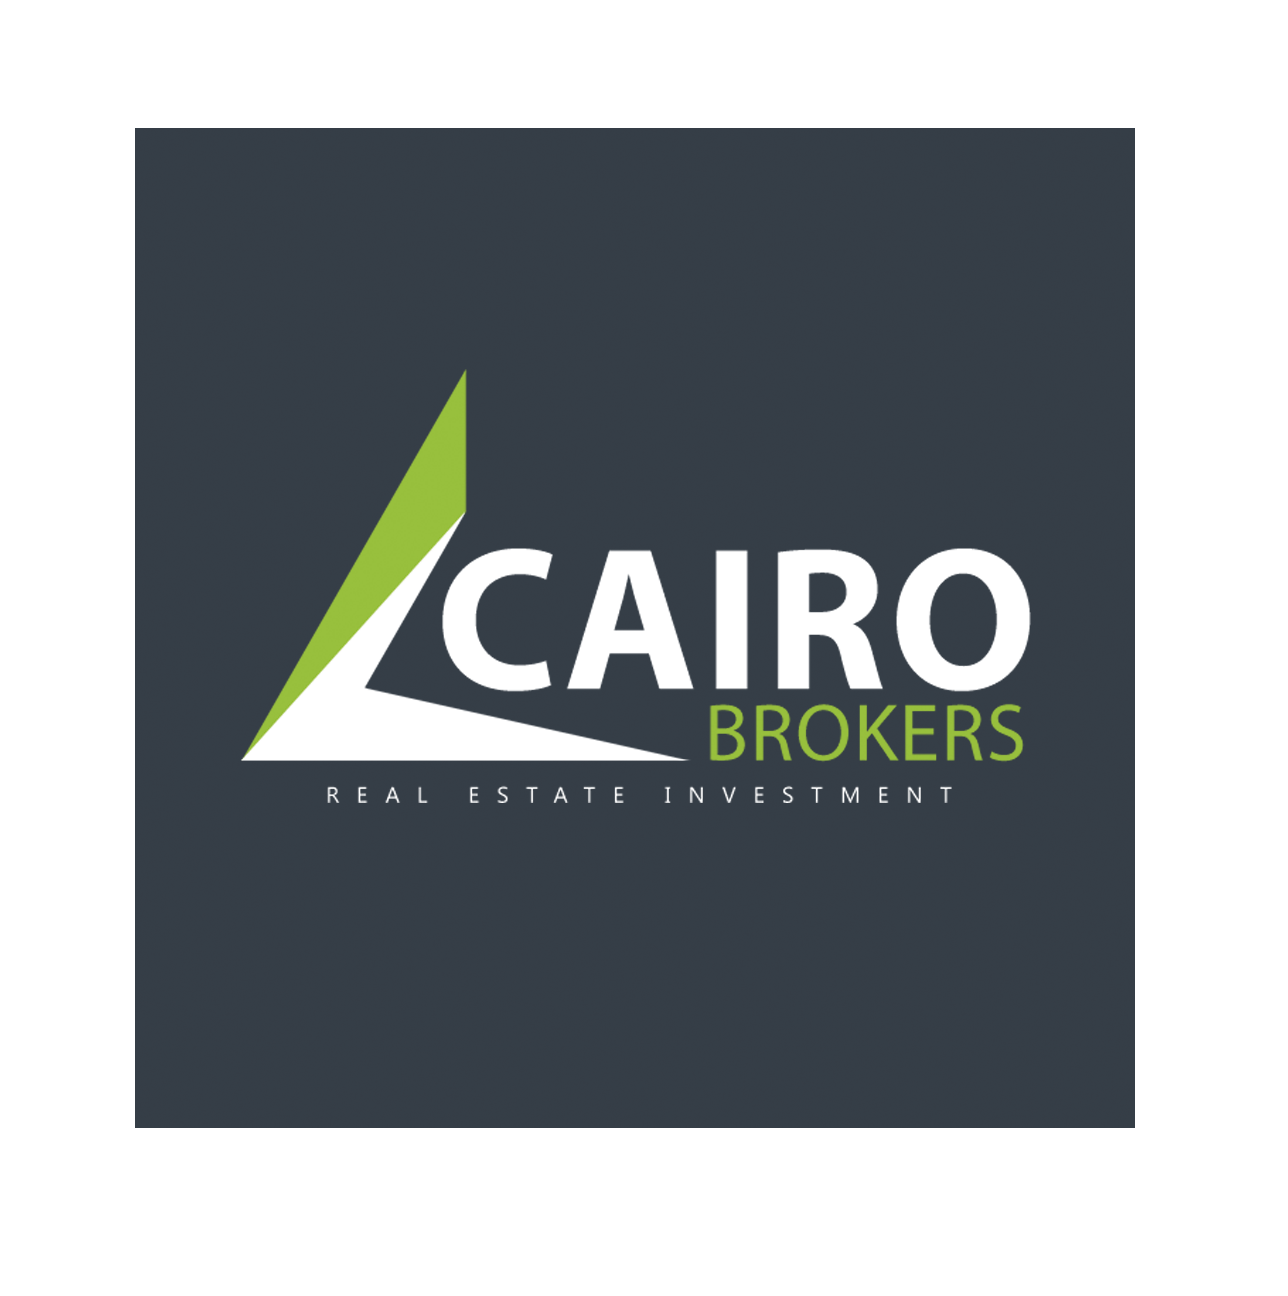 Cairo Brokers